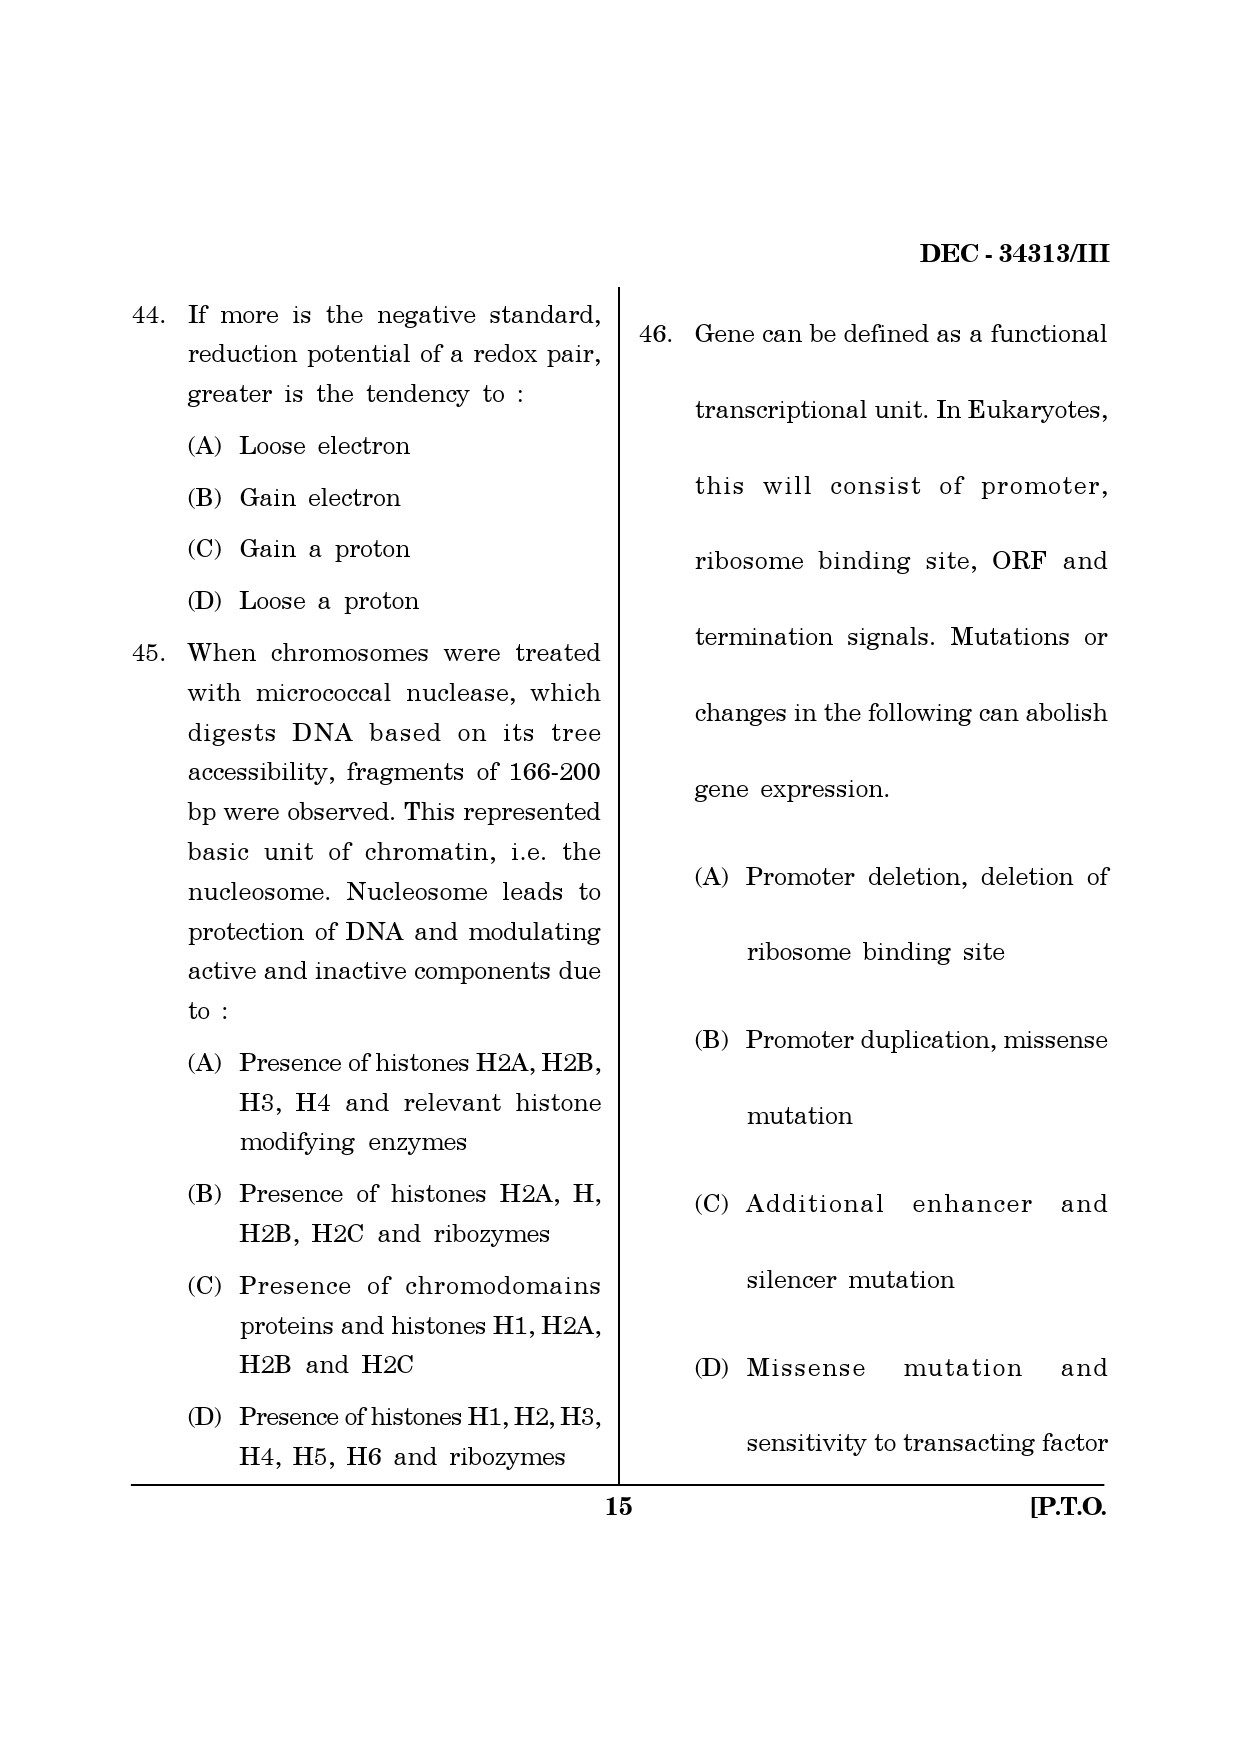 Maharashtra SET Life Sciences Question Paper III December 2013 14